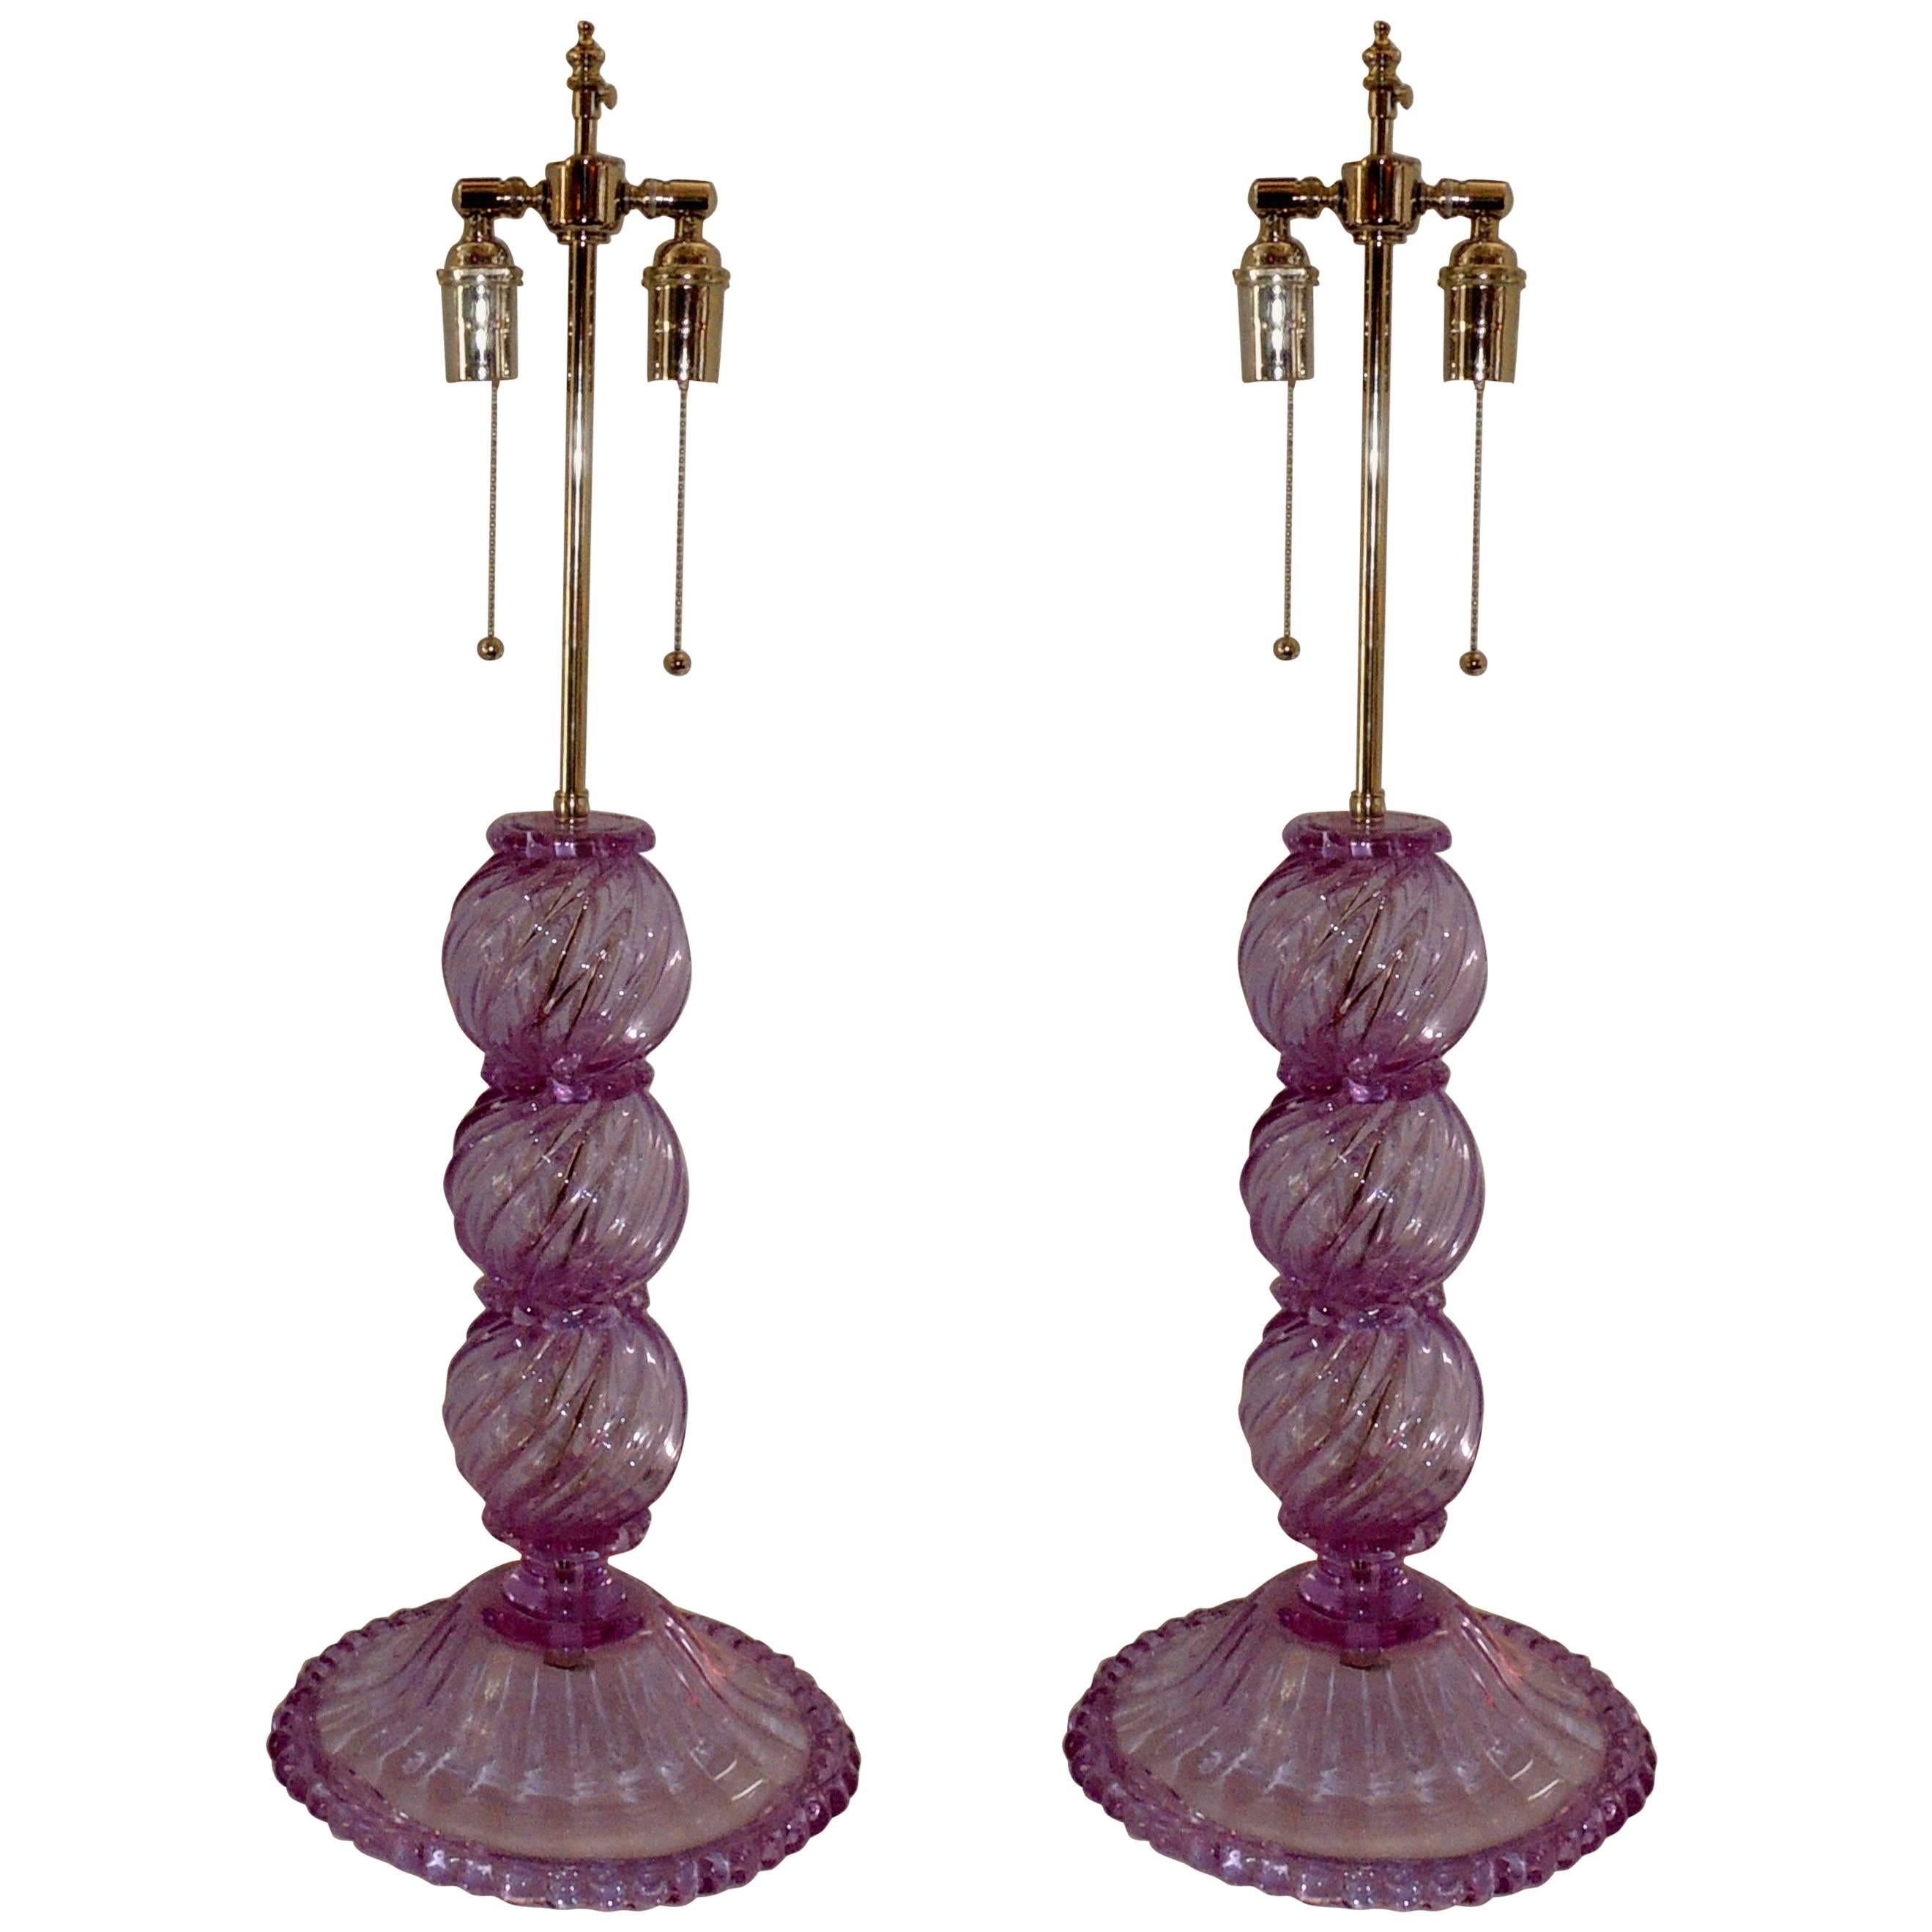 Wonderful Mid-Century Modern Pair Italian Venetian Swirl Murano Glass Deco Lamps